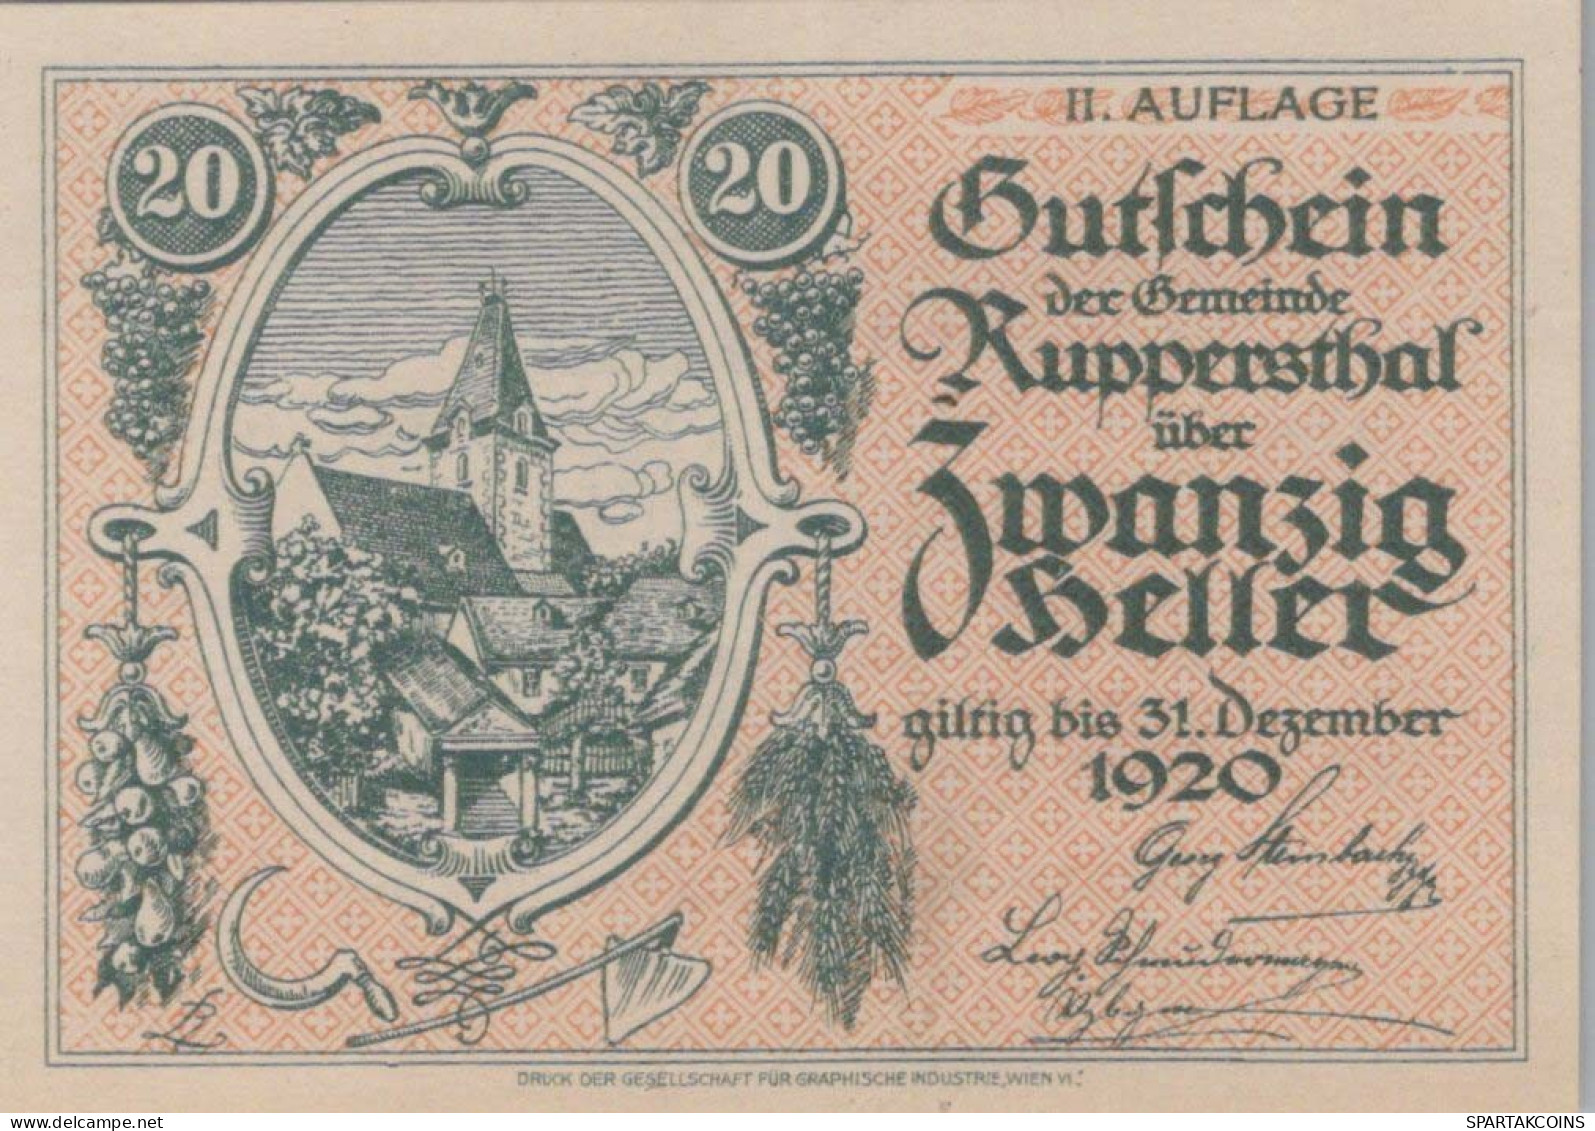 20 HELLER 1920 Stadt ROberenSTHAL Niedrigeren Österreich Notgeld #PJ227 - [11] Emissions Locales